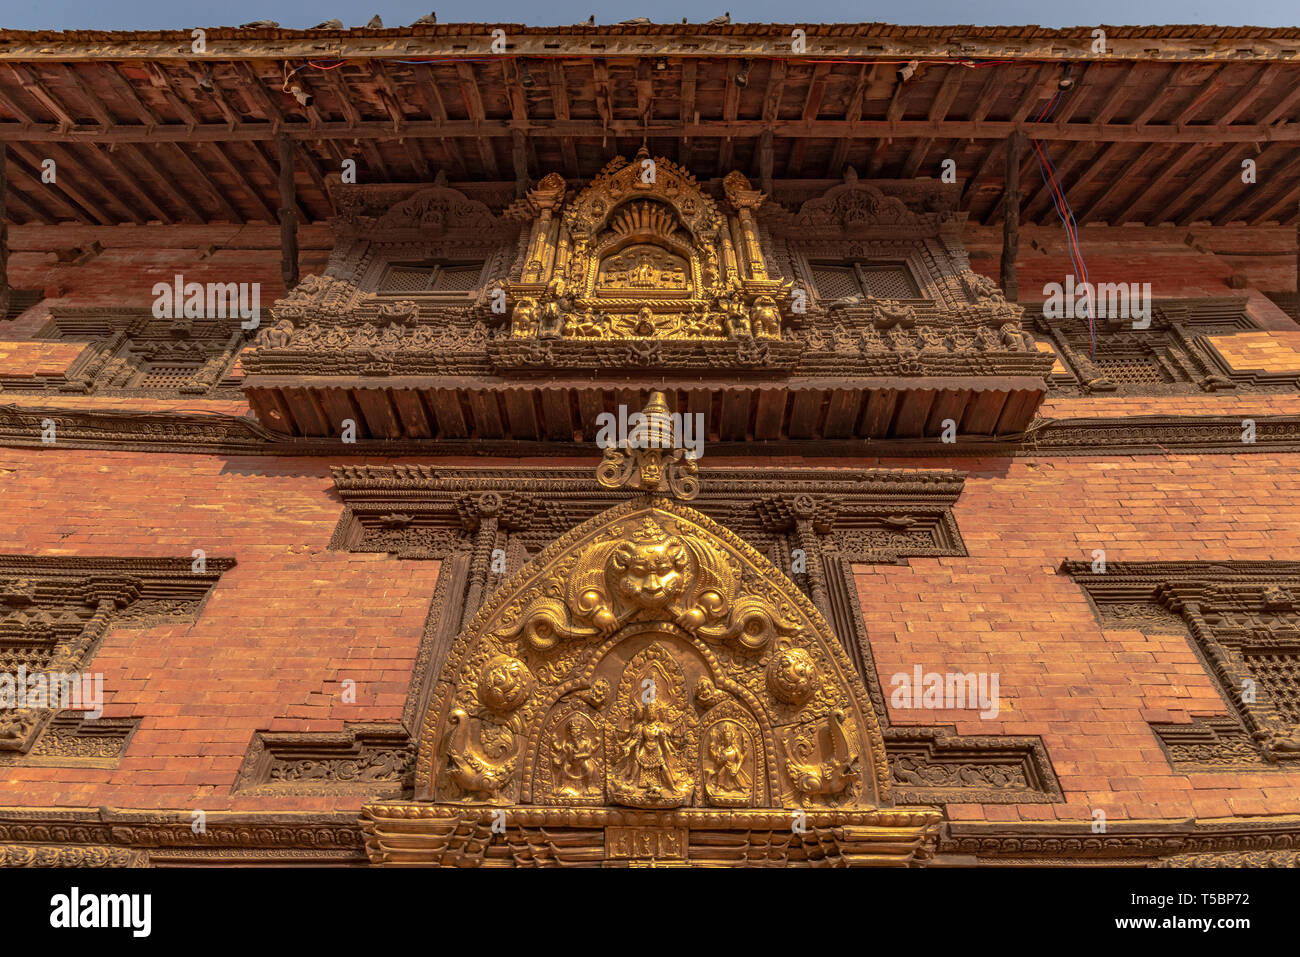 Kathmandu, Patan, NÉPAL - 3 avril 2019 : l'une des façade du palais royal du Durbar Square de Patan Banque D'Images